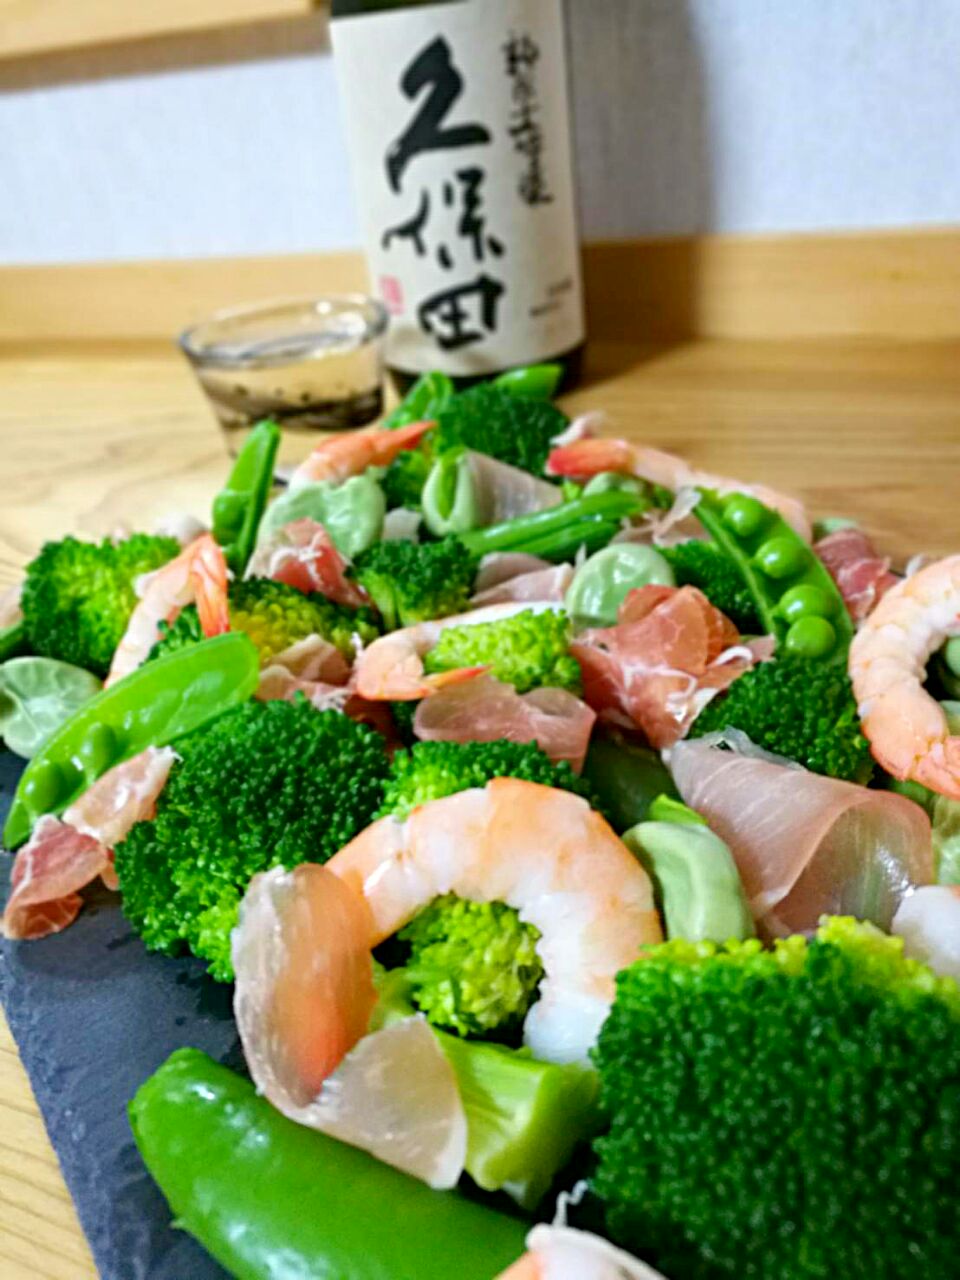 春の緑のお野菜がお安く買えたので、春っぽいサラダ?
今日はお祝い㊗
久保田の純米大吟醸で???✨